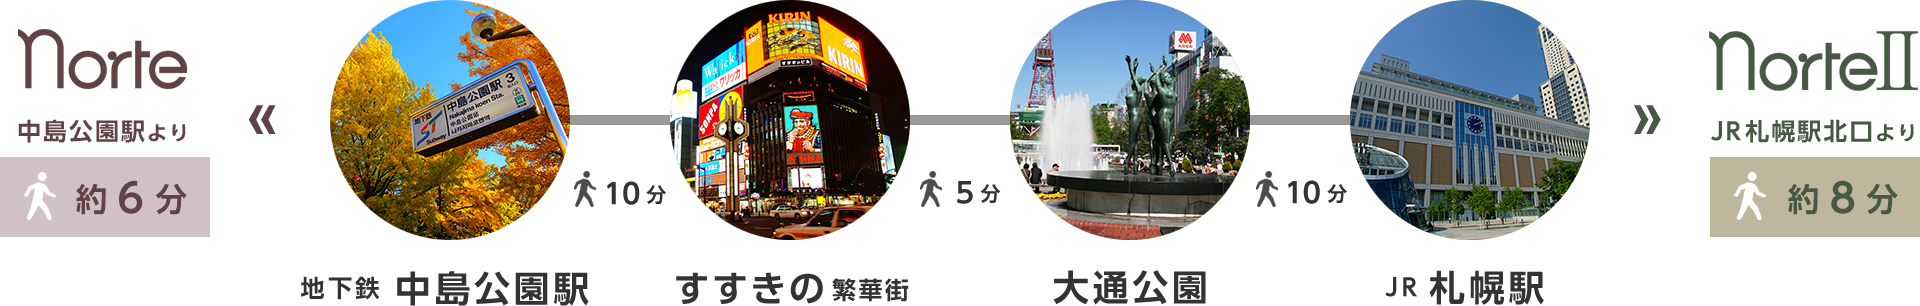 大通公園や札幌駅への移動も徒歩圏内のビジネスインノルテ